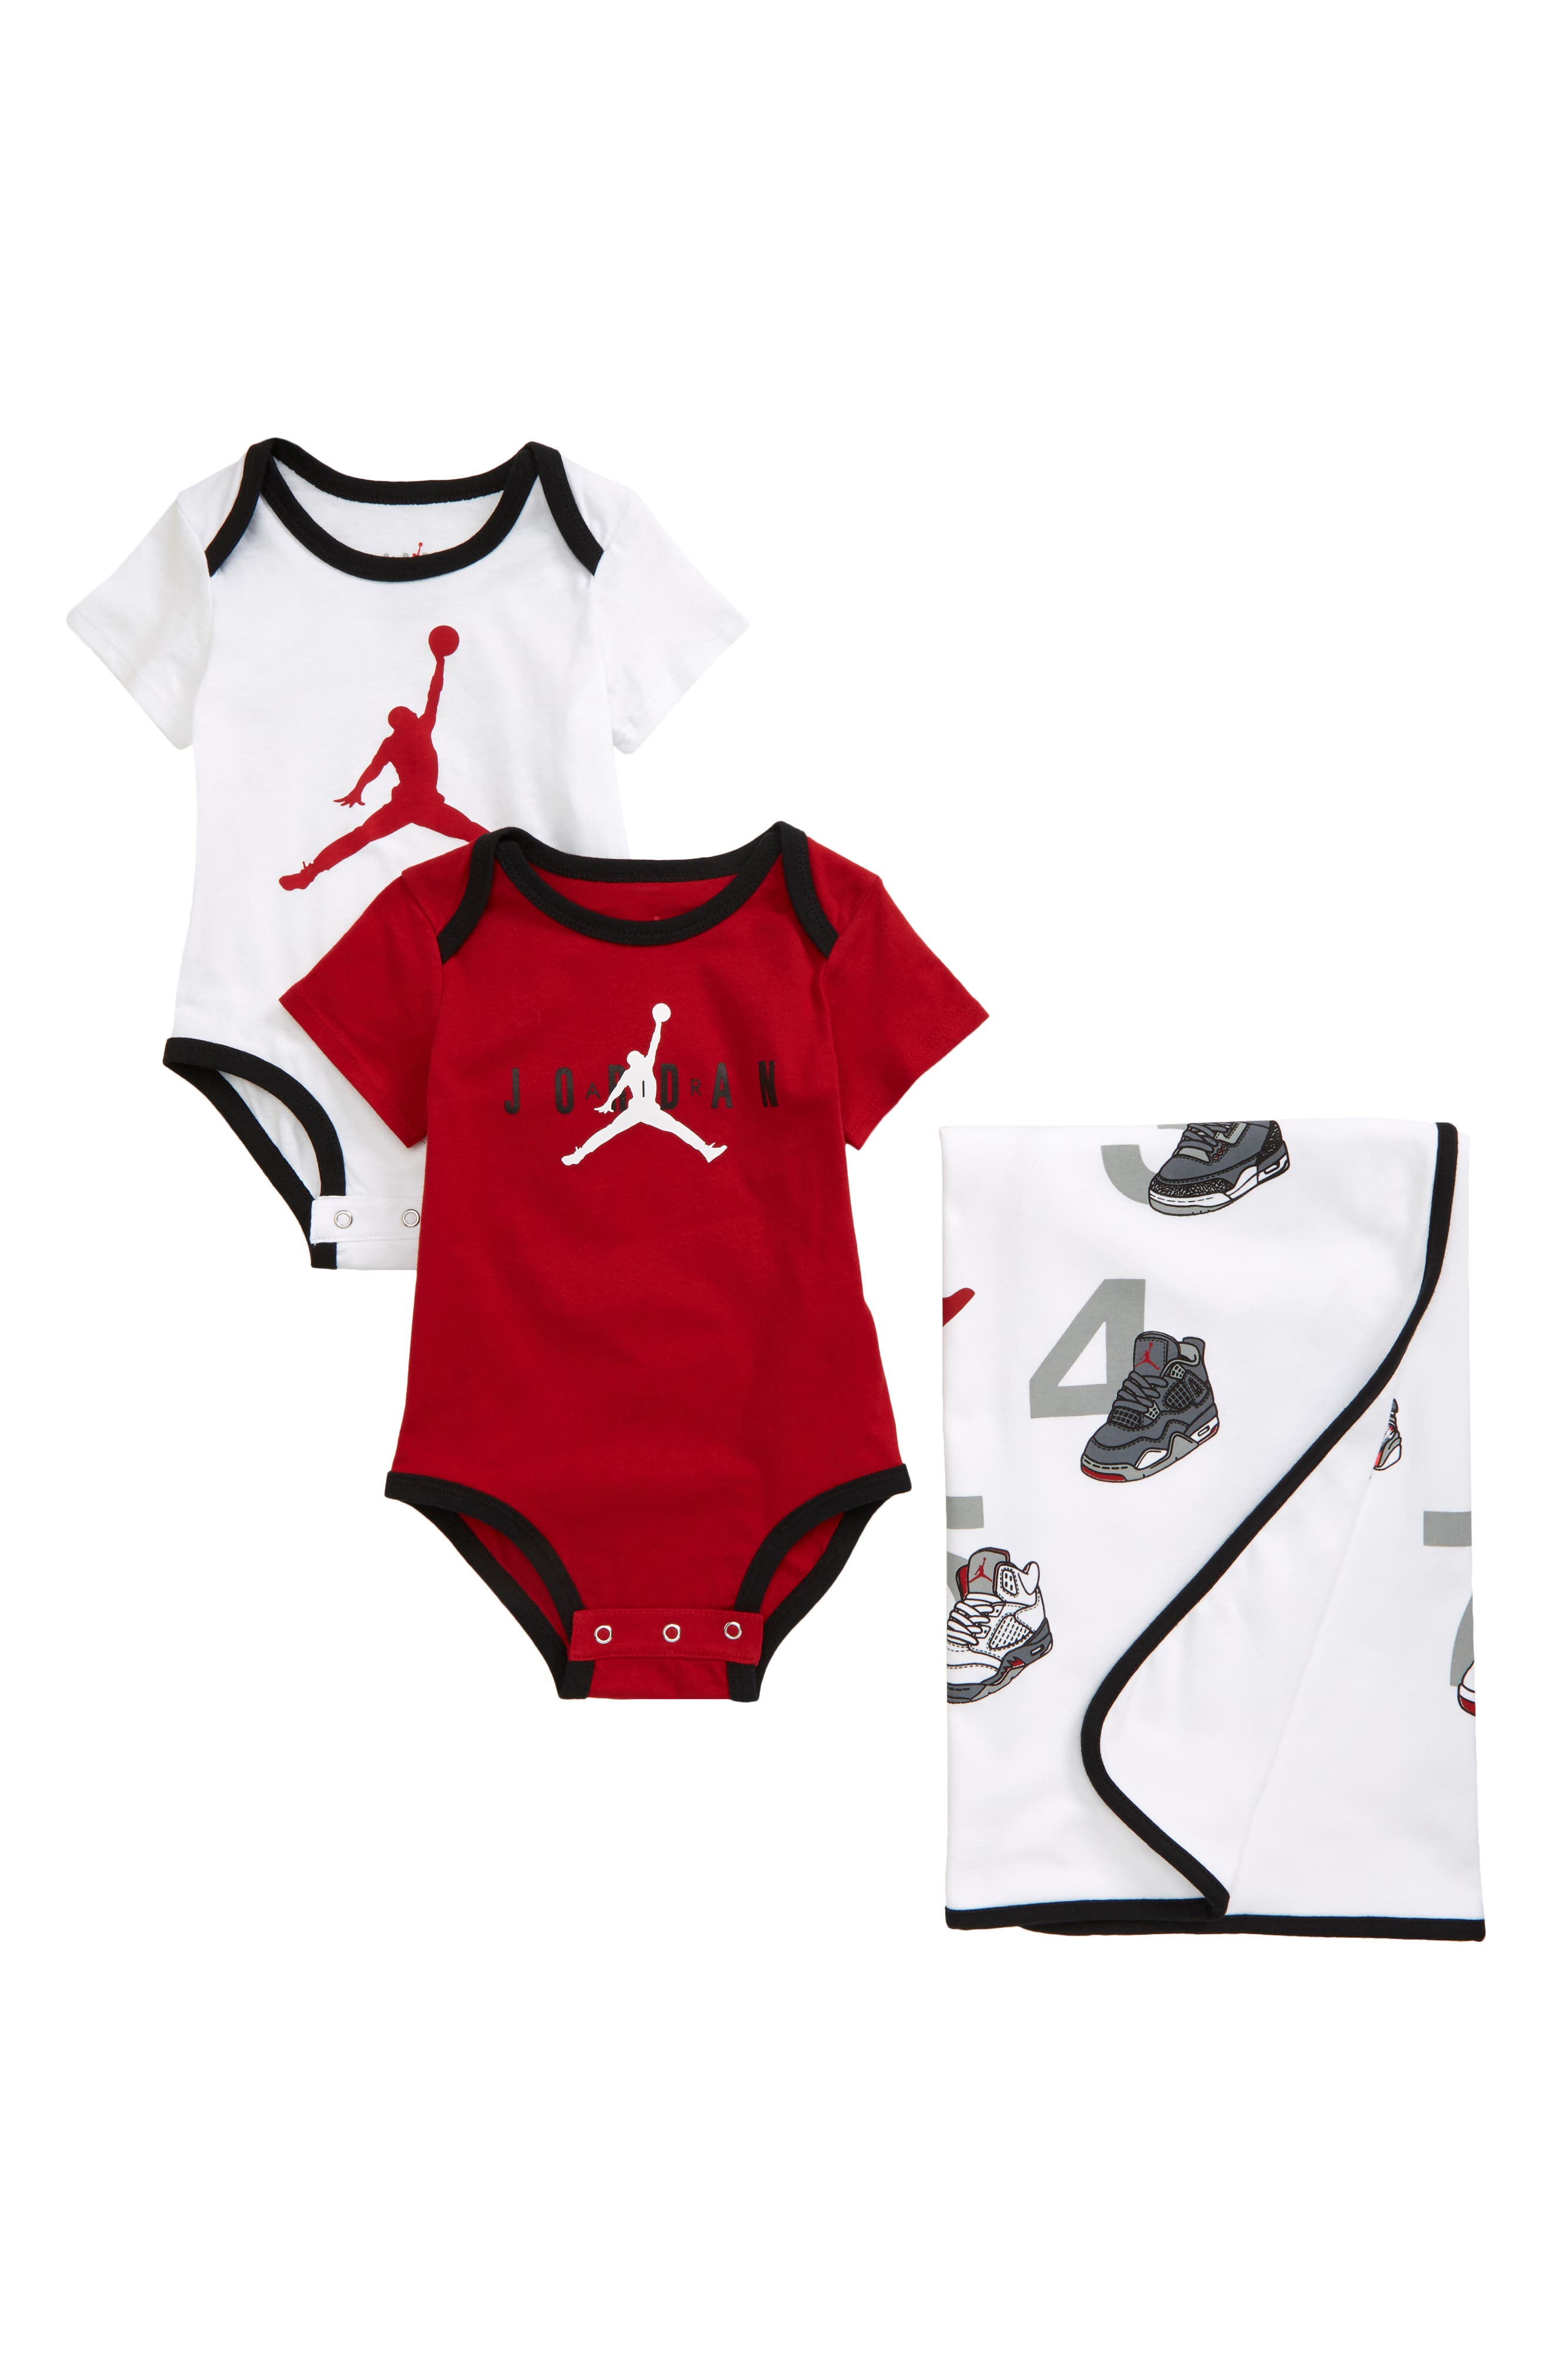 jordan infant boy clothes